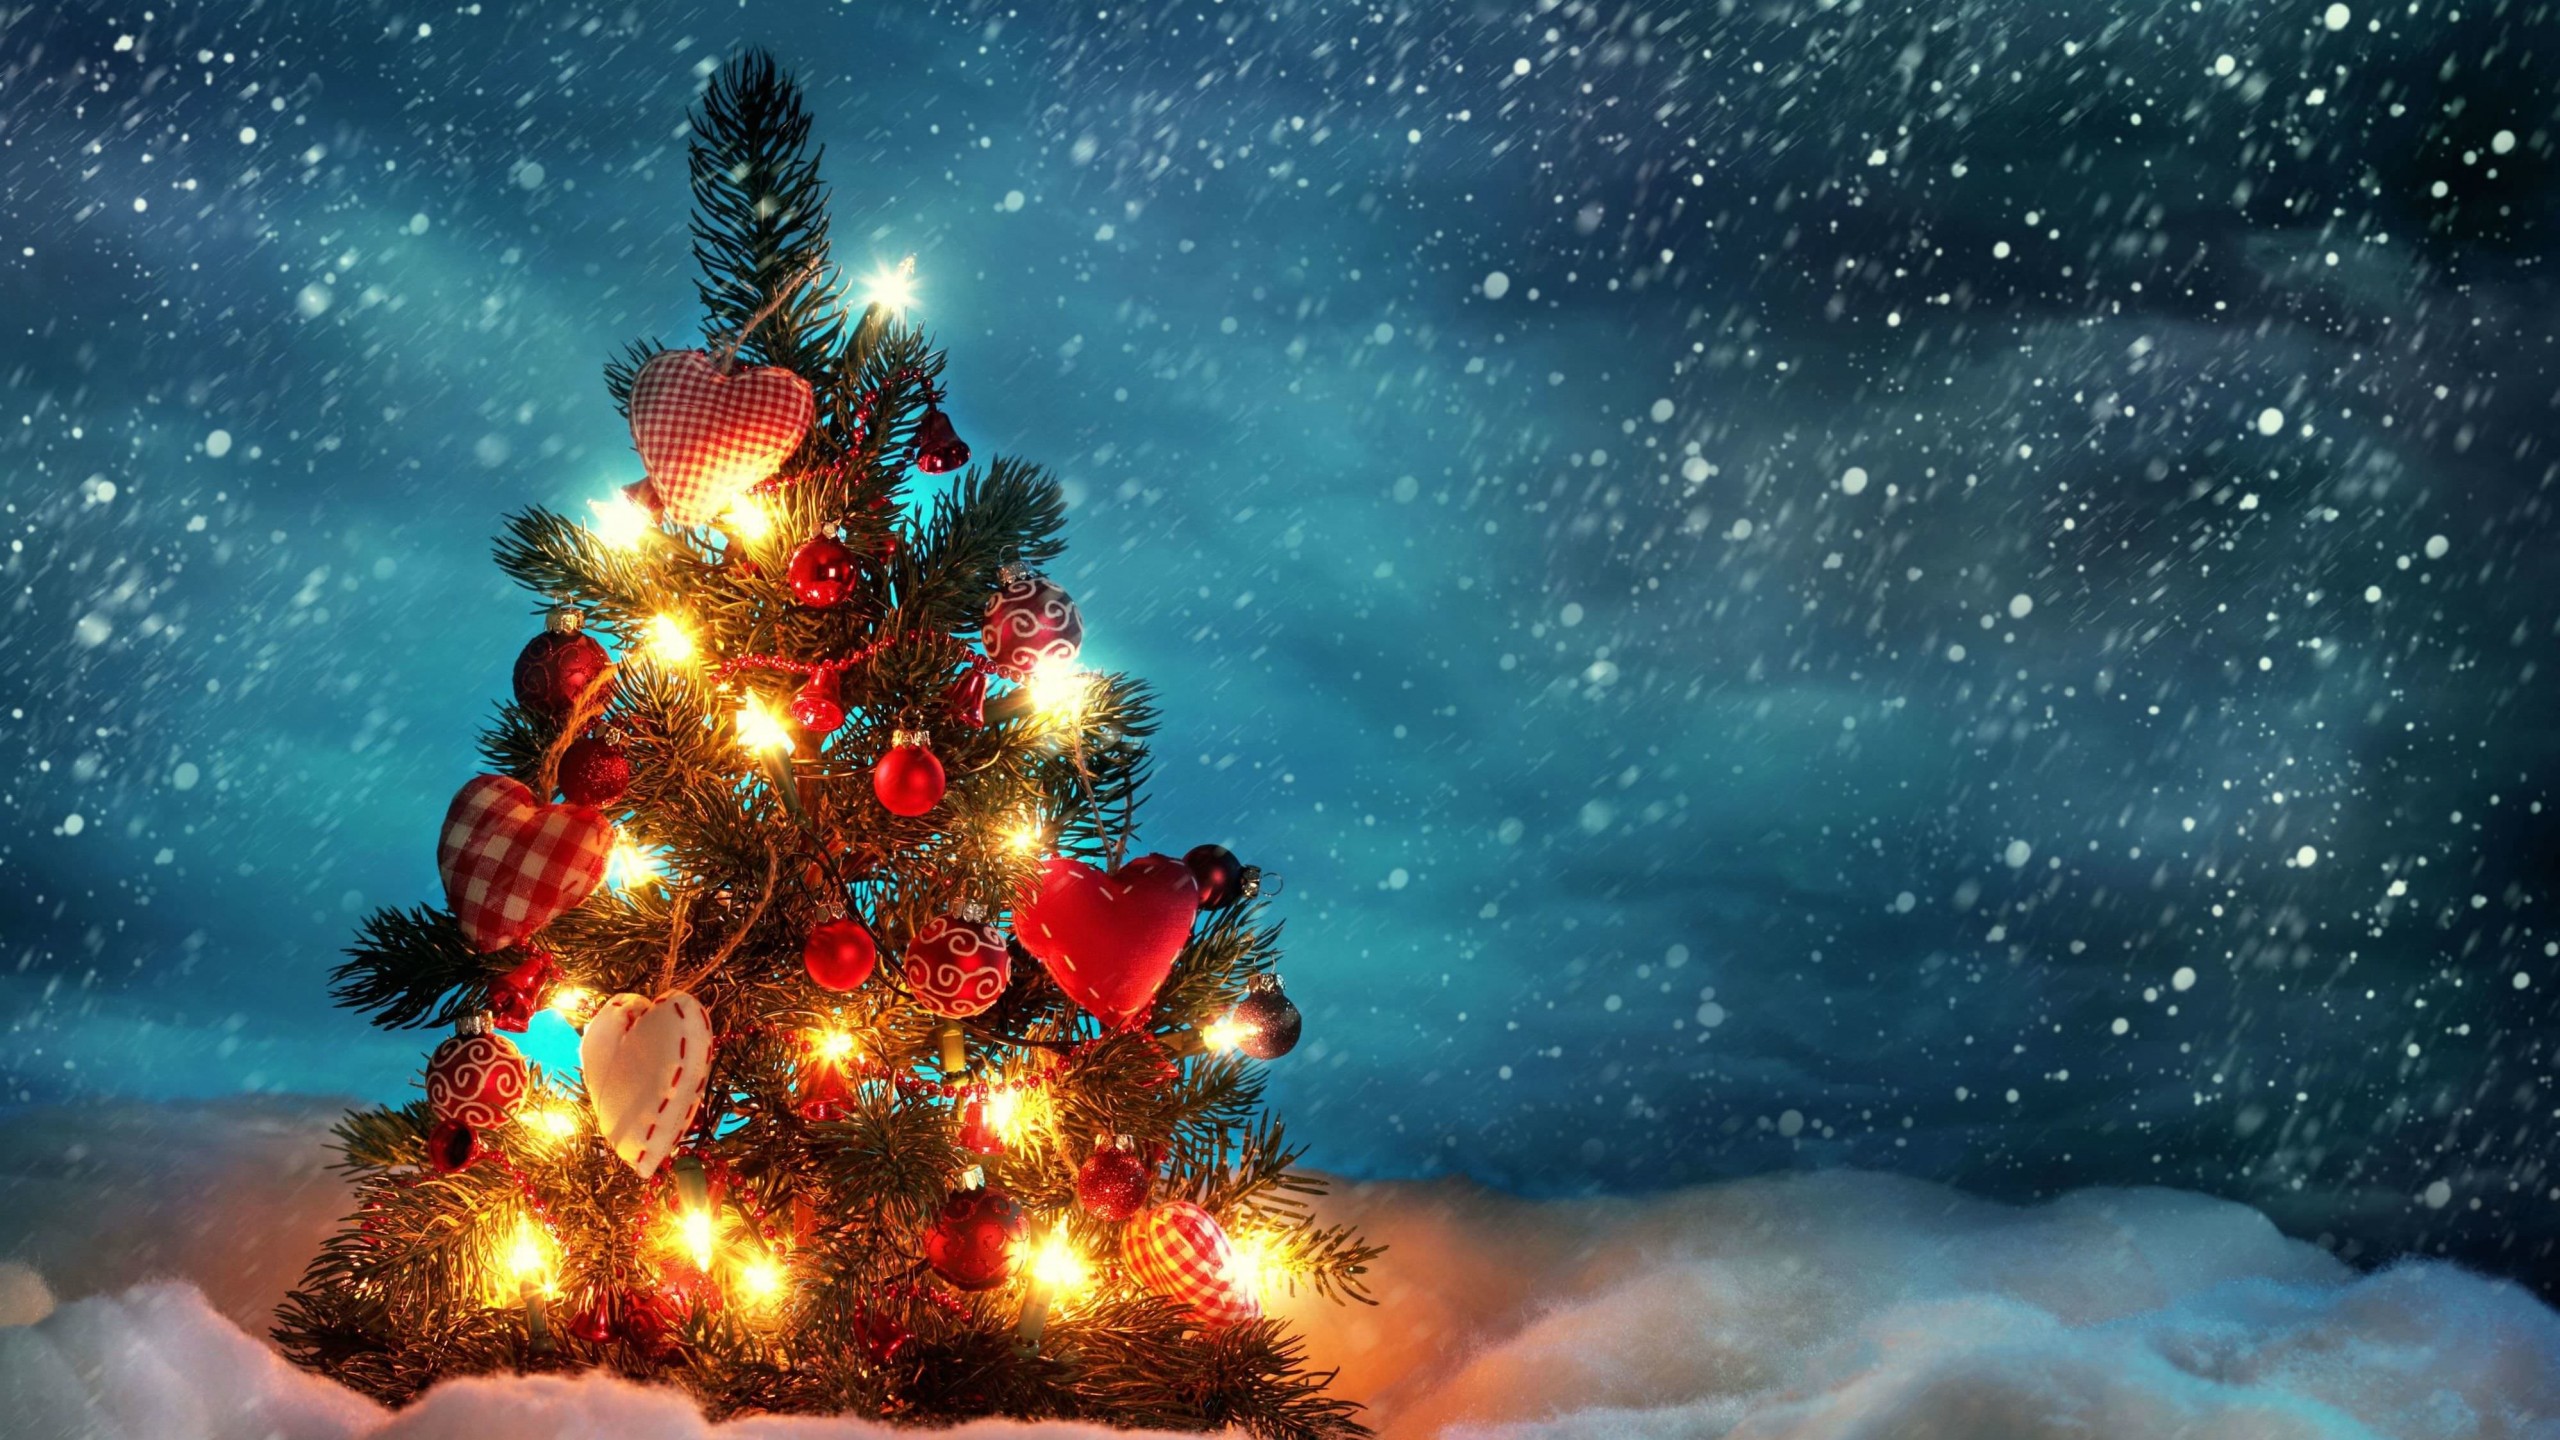 Christmas Tree Wallpaper for Desktop 2560x1440